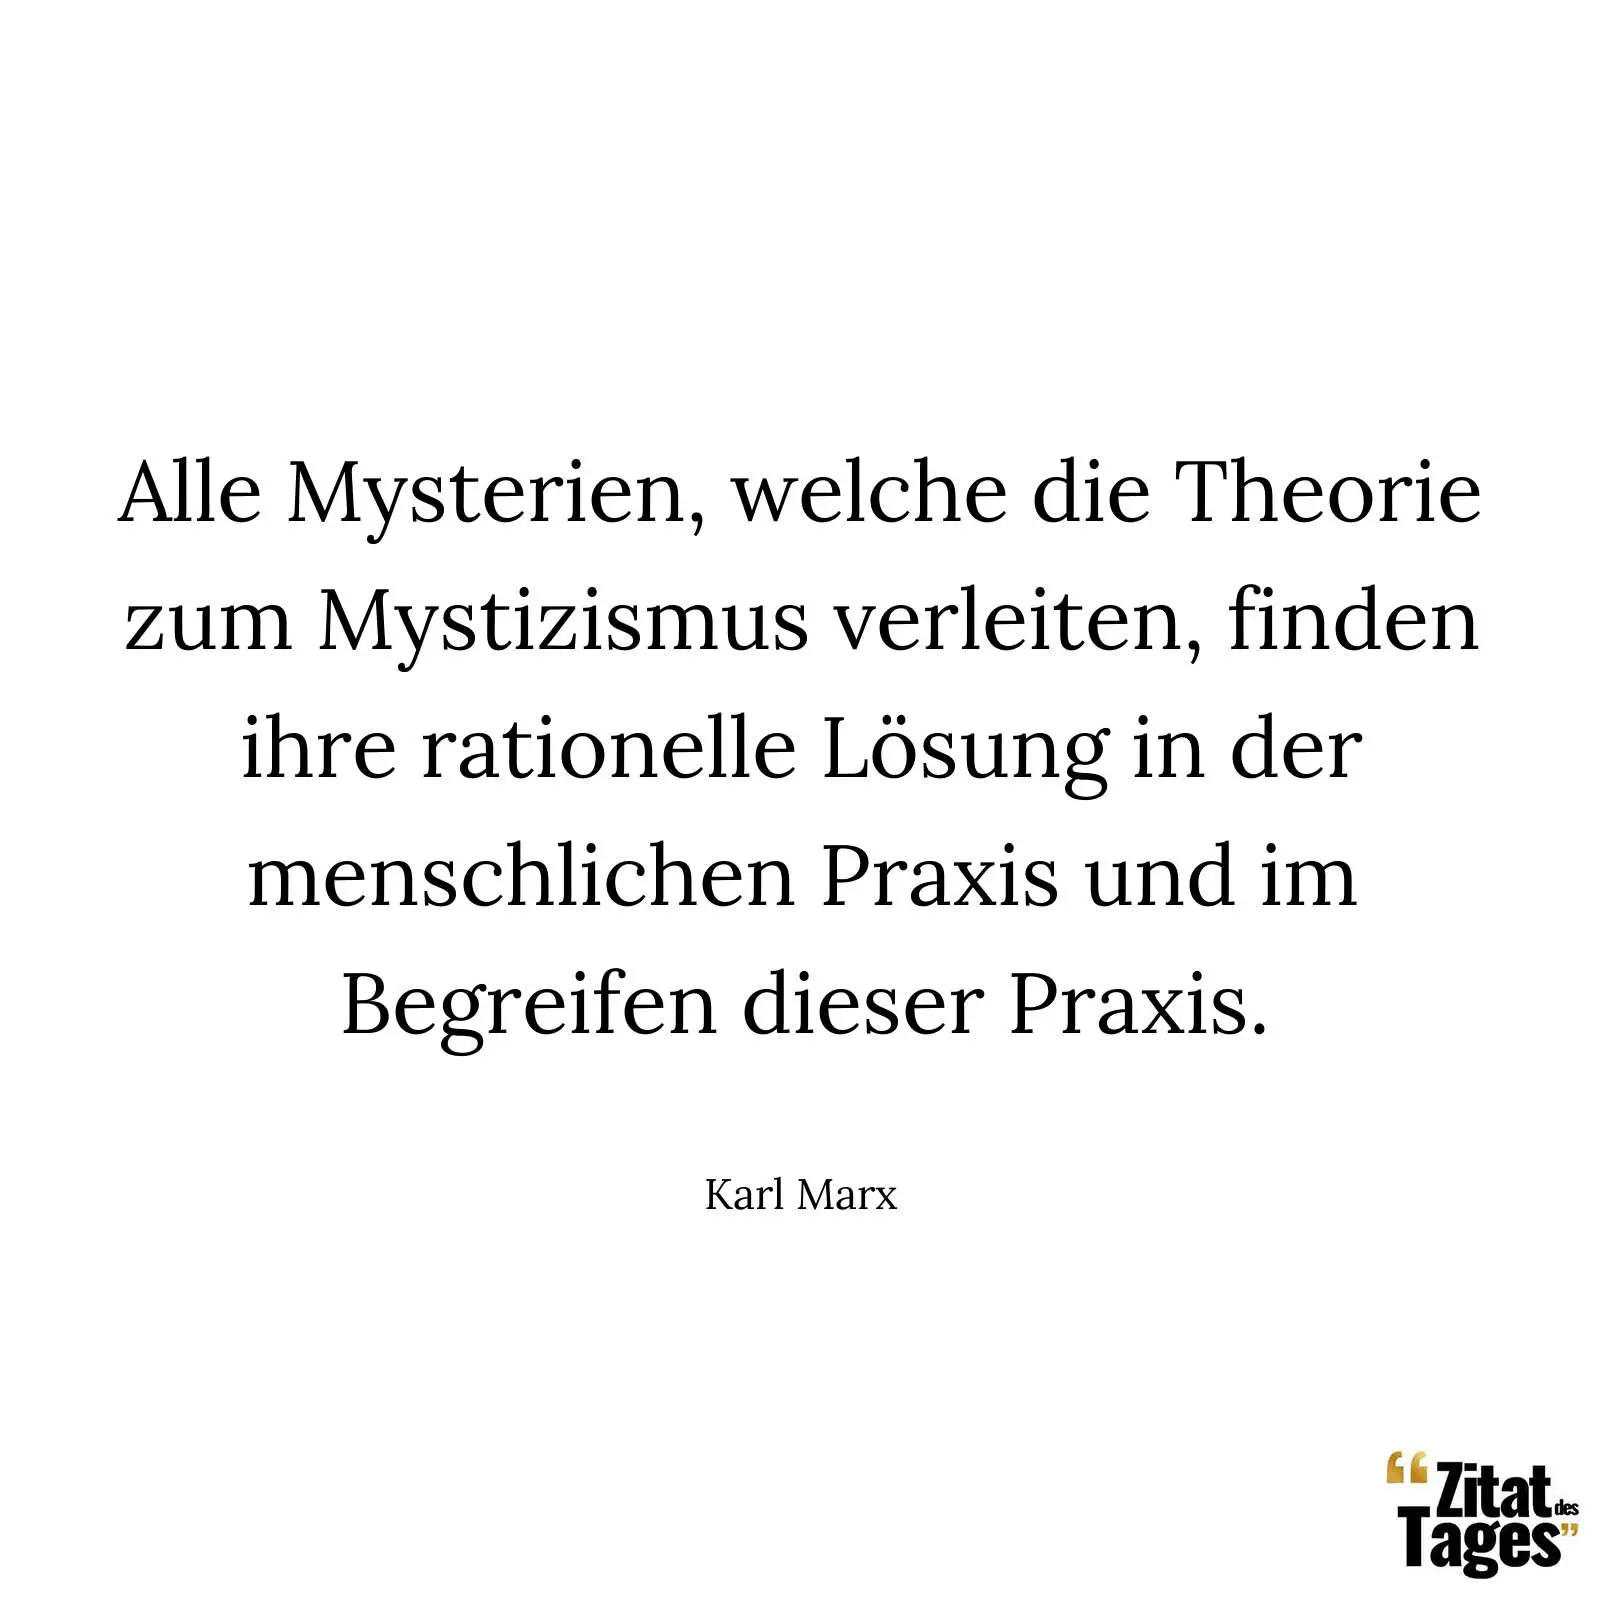 Alle Mysterien, welche die Theorie zum Mystizismus verleiten, finden ihre rationelle Lösung in der menschlichen Praxis und im Begreifen dieser Praxis. - Karl Marx